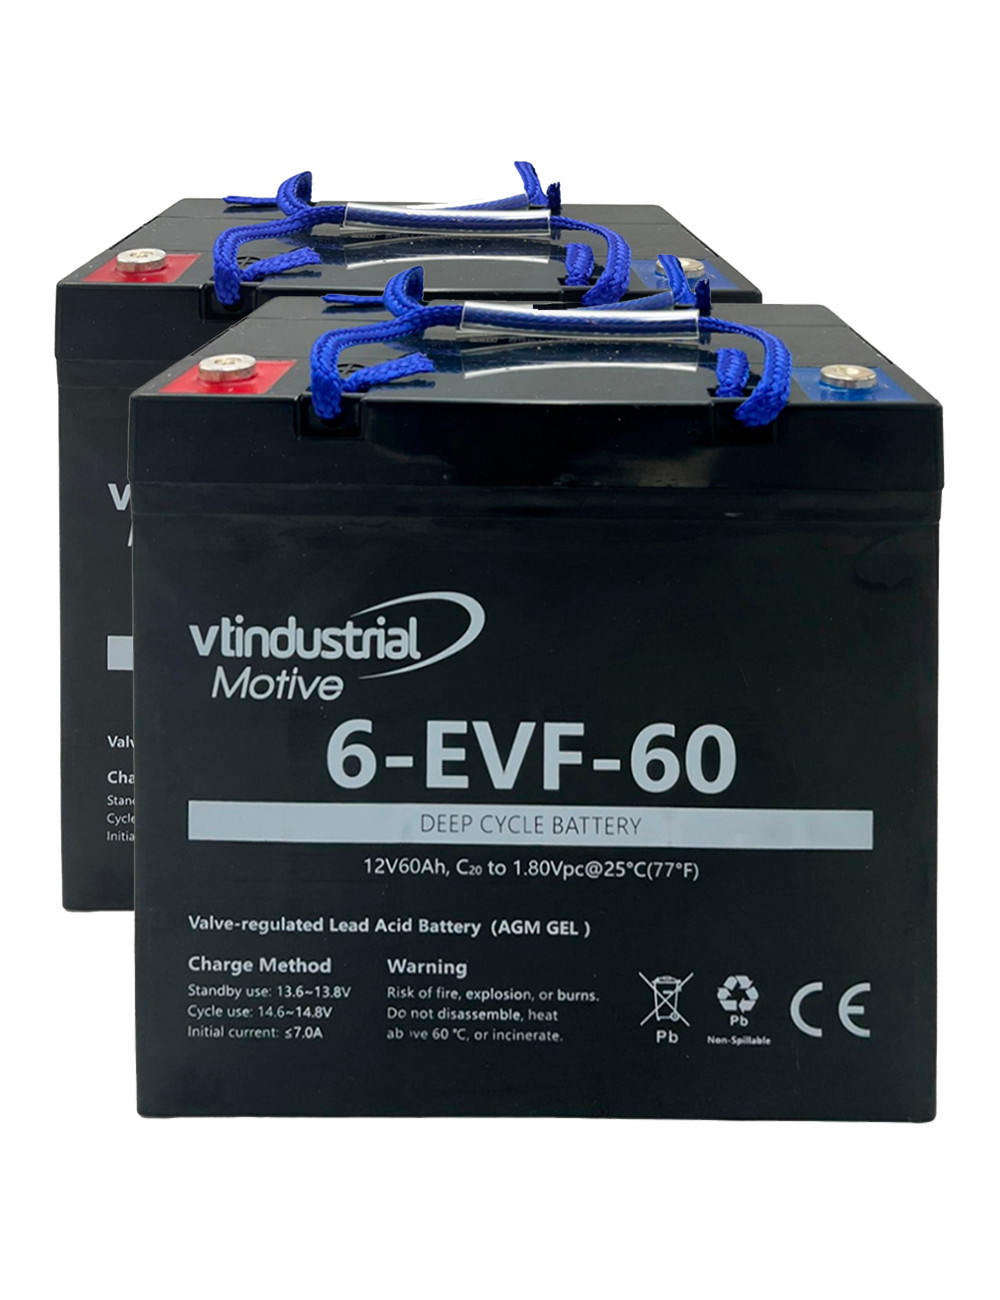 Pack 2 baterías gel AGM para Quickie Q100R de Sunrise Medical de 12V 60Ah C20 ciclo profundo 6-EVF-60 - 2x6-EVF-60 -  -  - 1